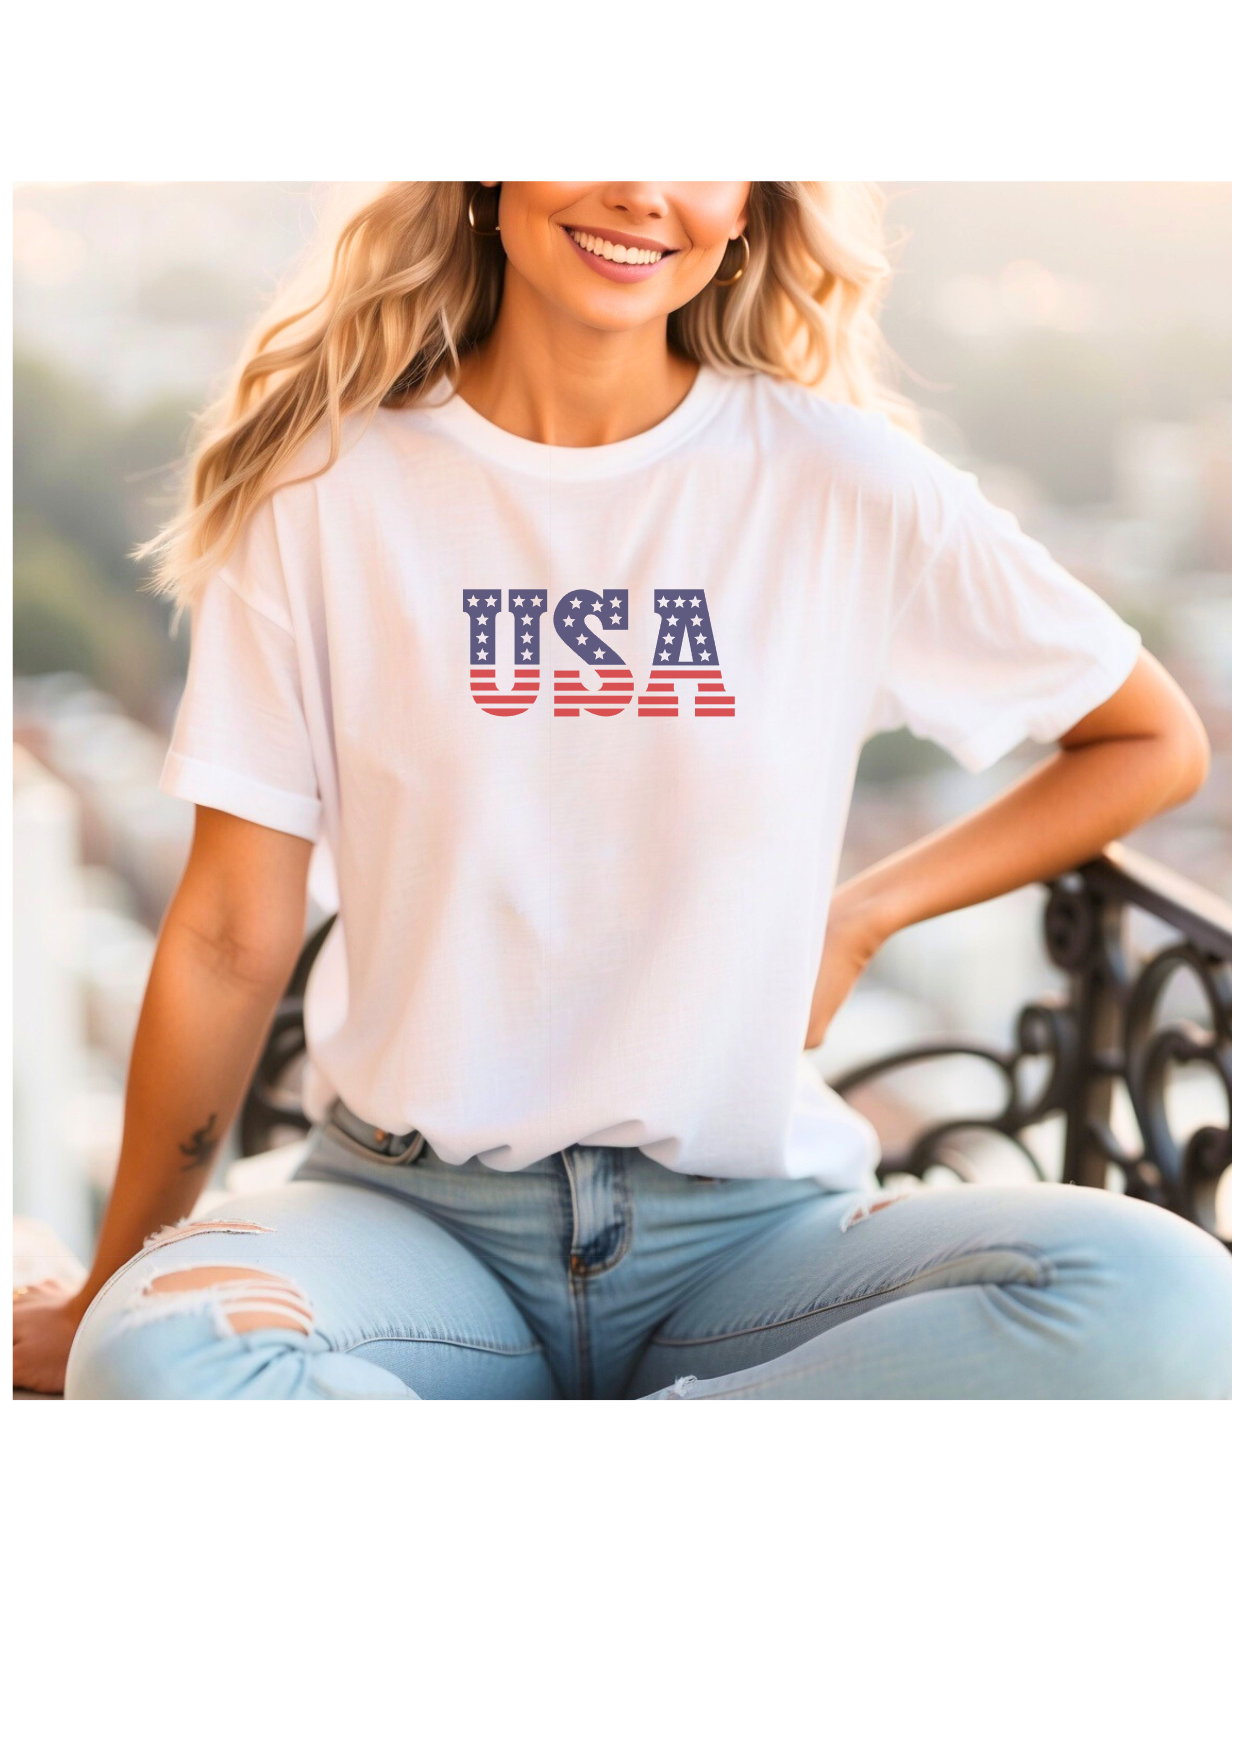 USA Shirt - 2 Options